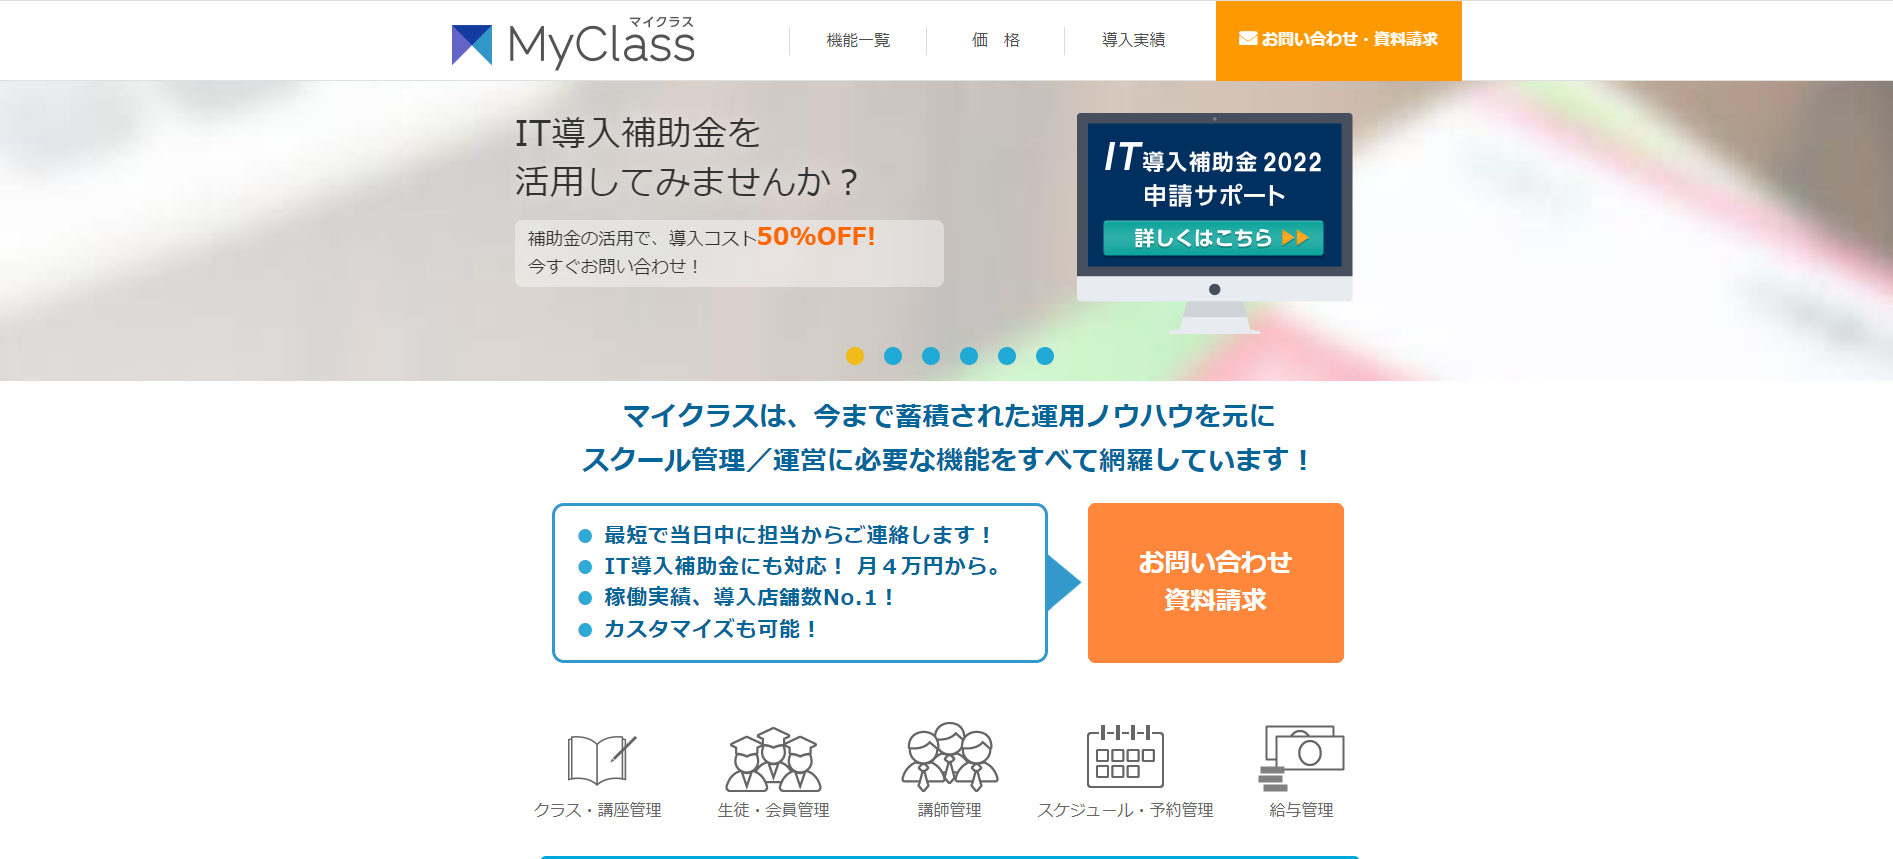 学習塾管理システムのMyClass